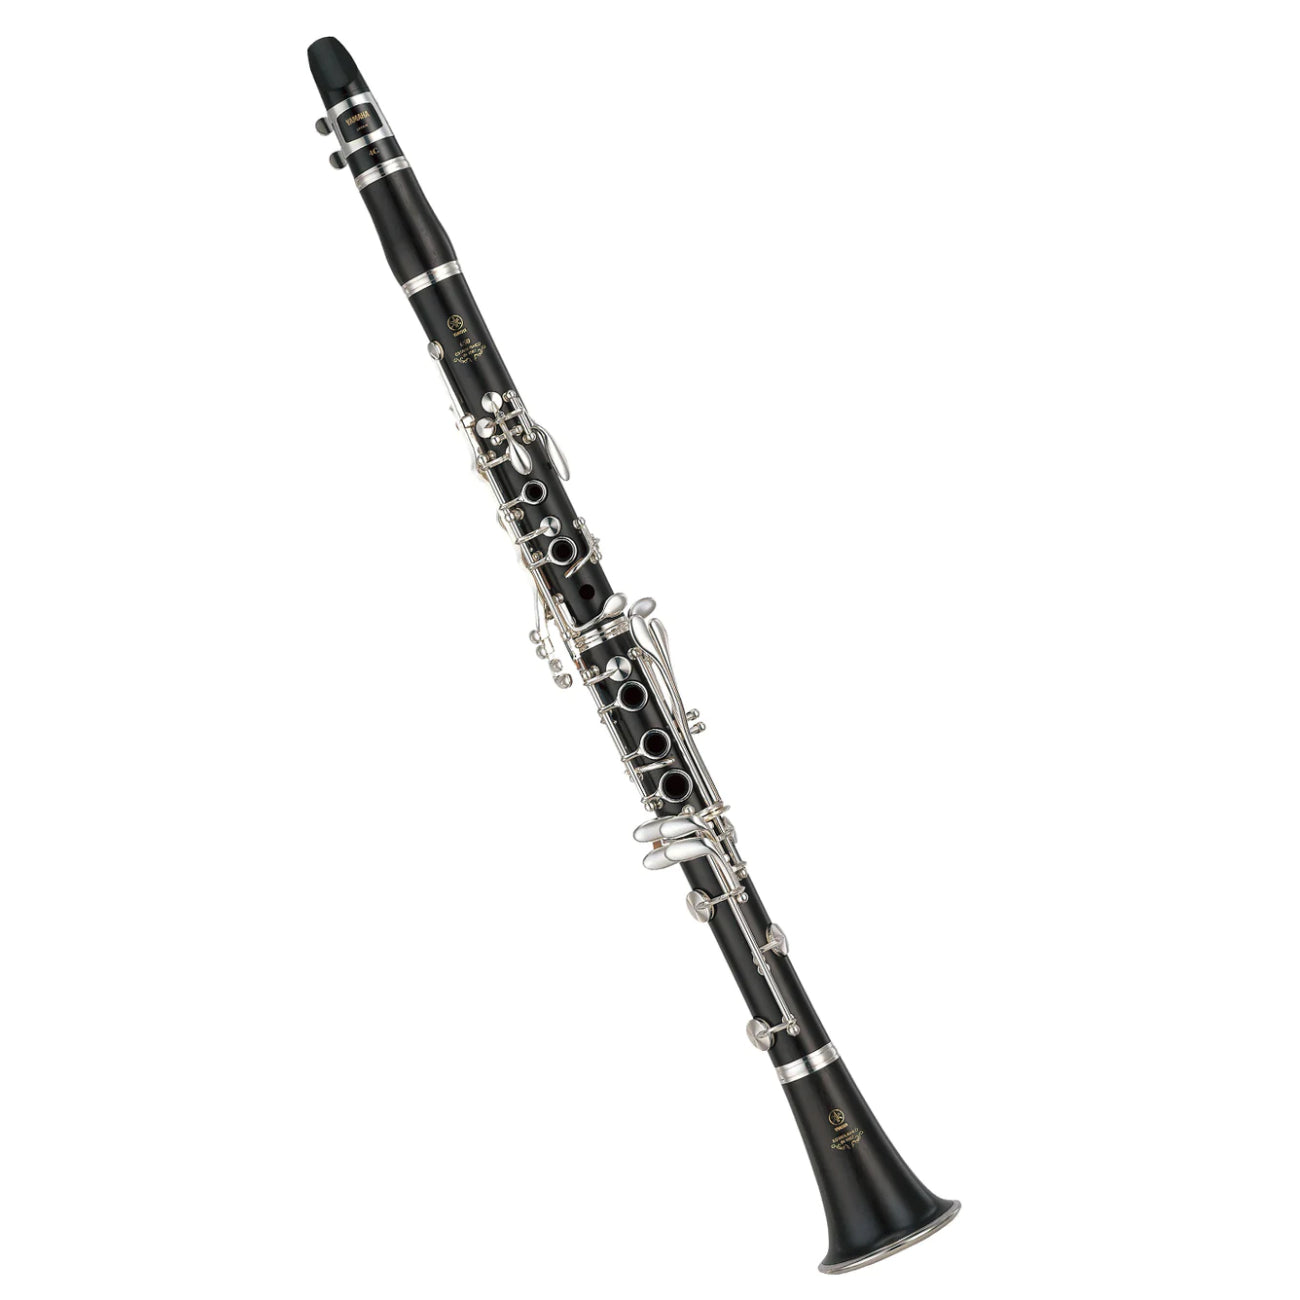 Kèn Clarinet Bb Yamaha YCL-650II-Mai Nguyên Music